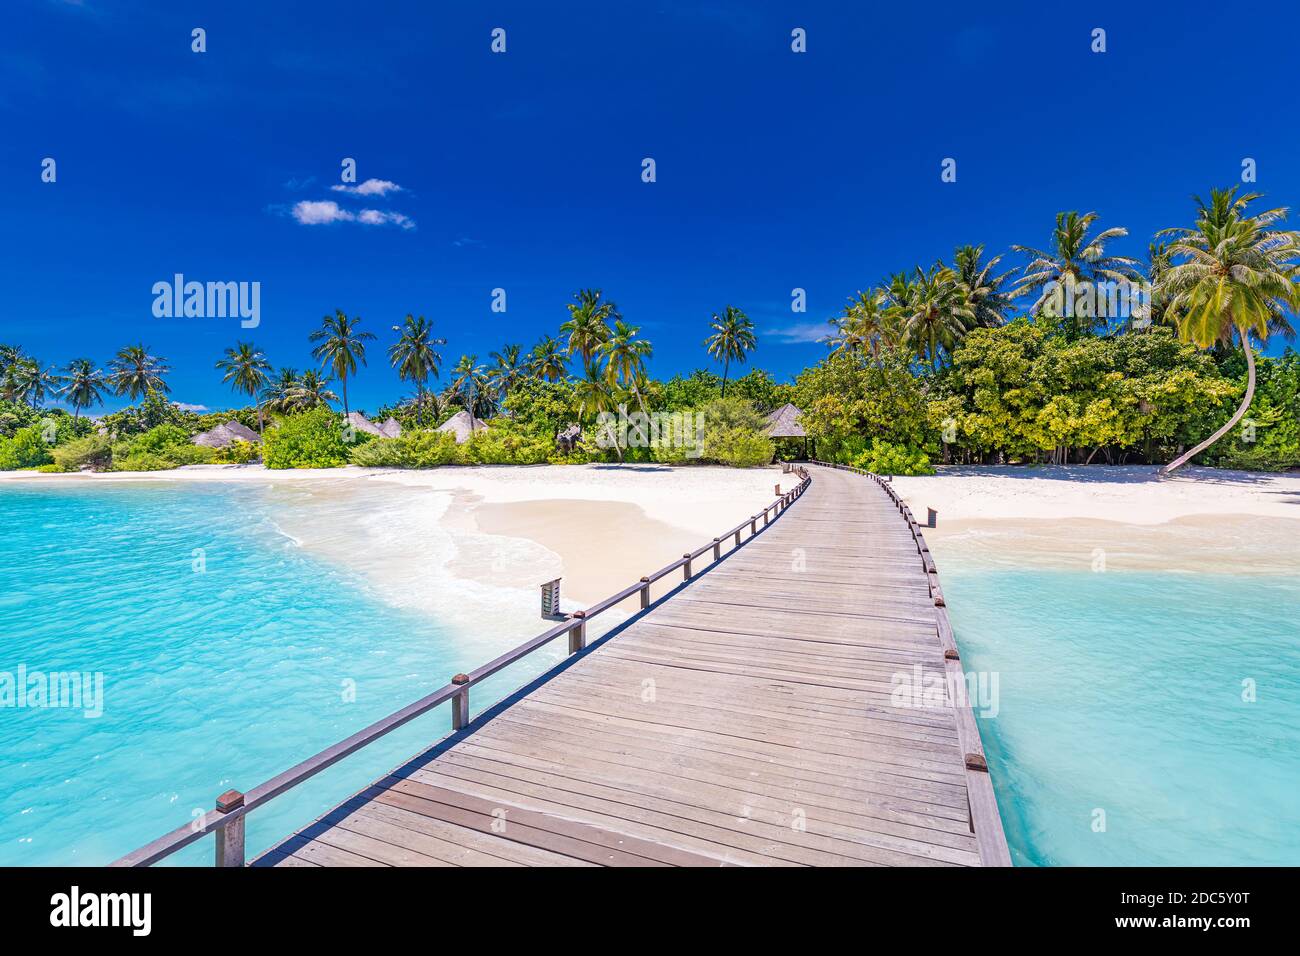 Maldive Beach resort paesaggio panoramico. Spiaggia tropicale vacanza. Lungo molo in legno, molo nell'isola paradisiaca, palme, sabbia bianca, cielo blu Foto Stock